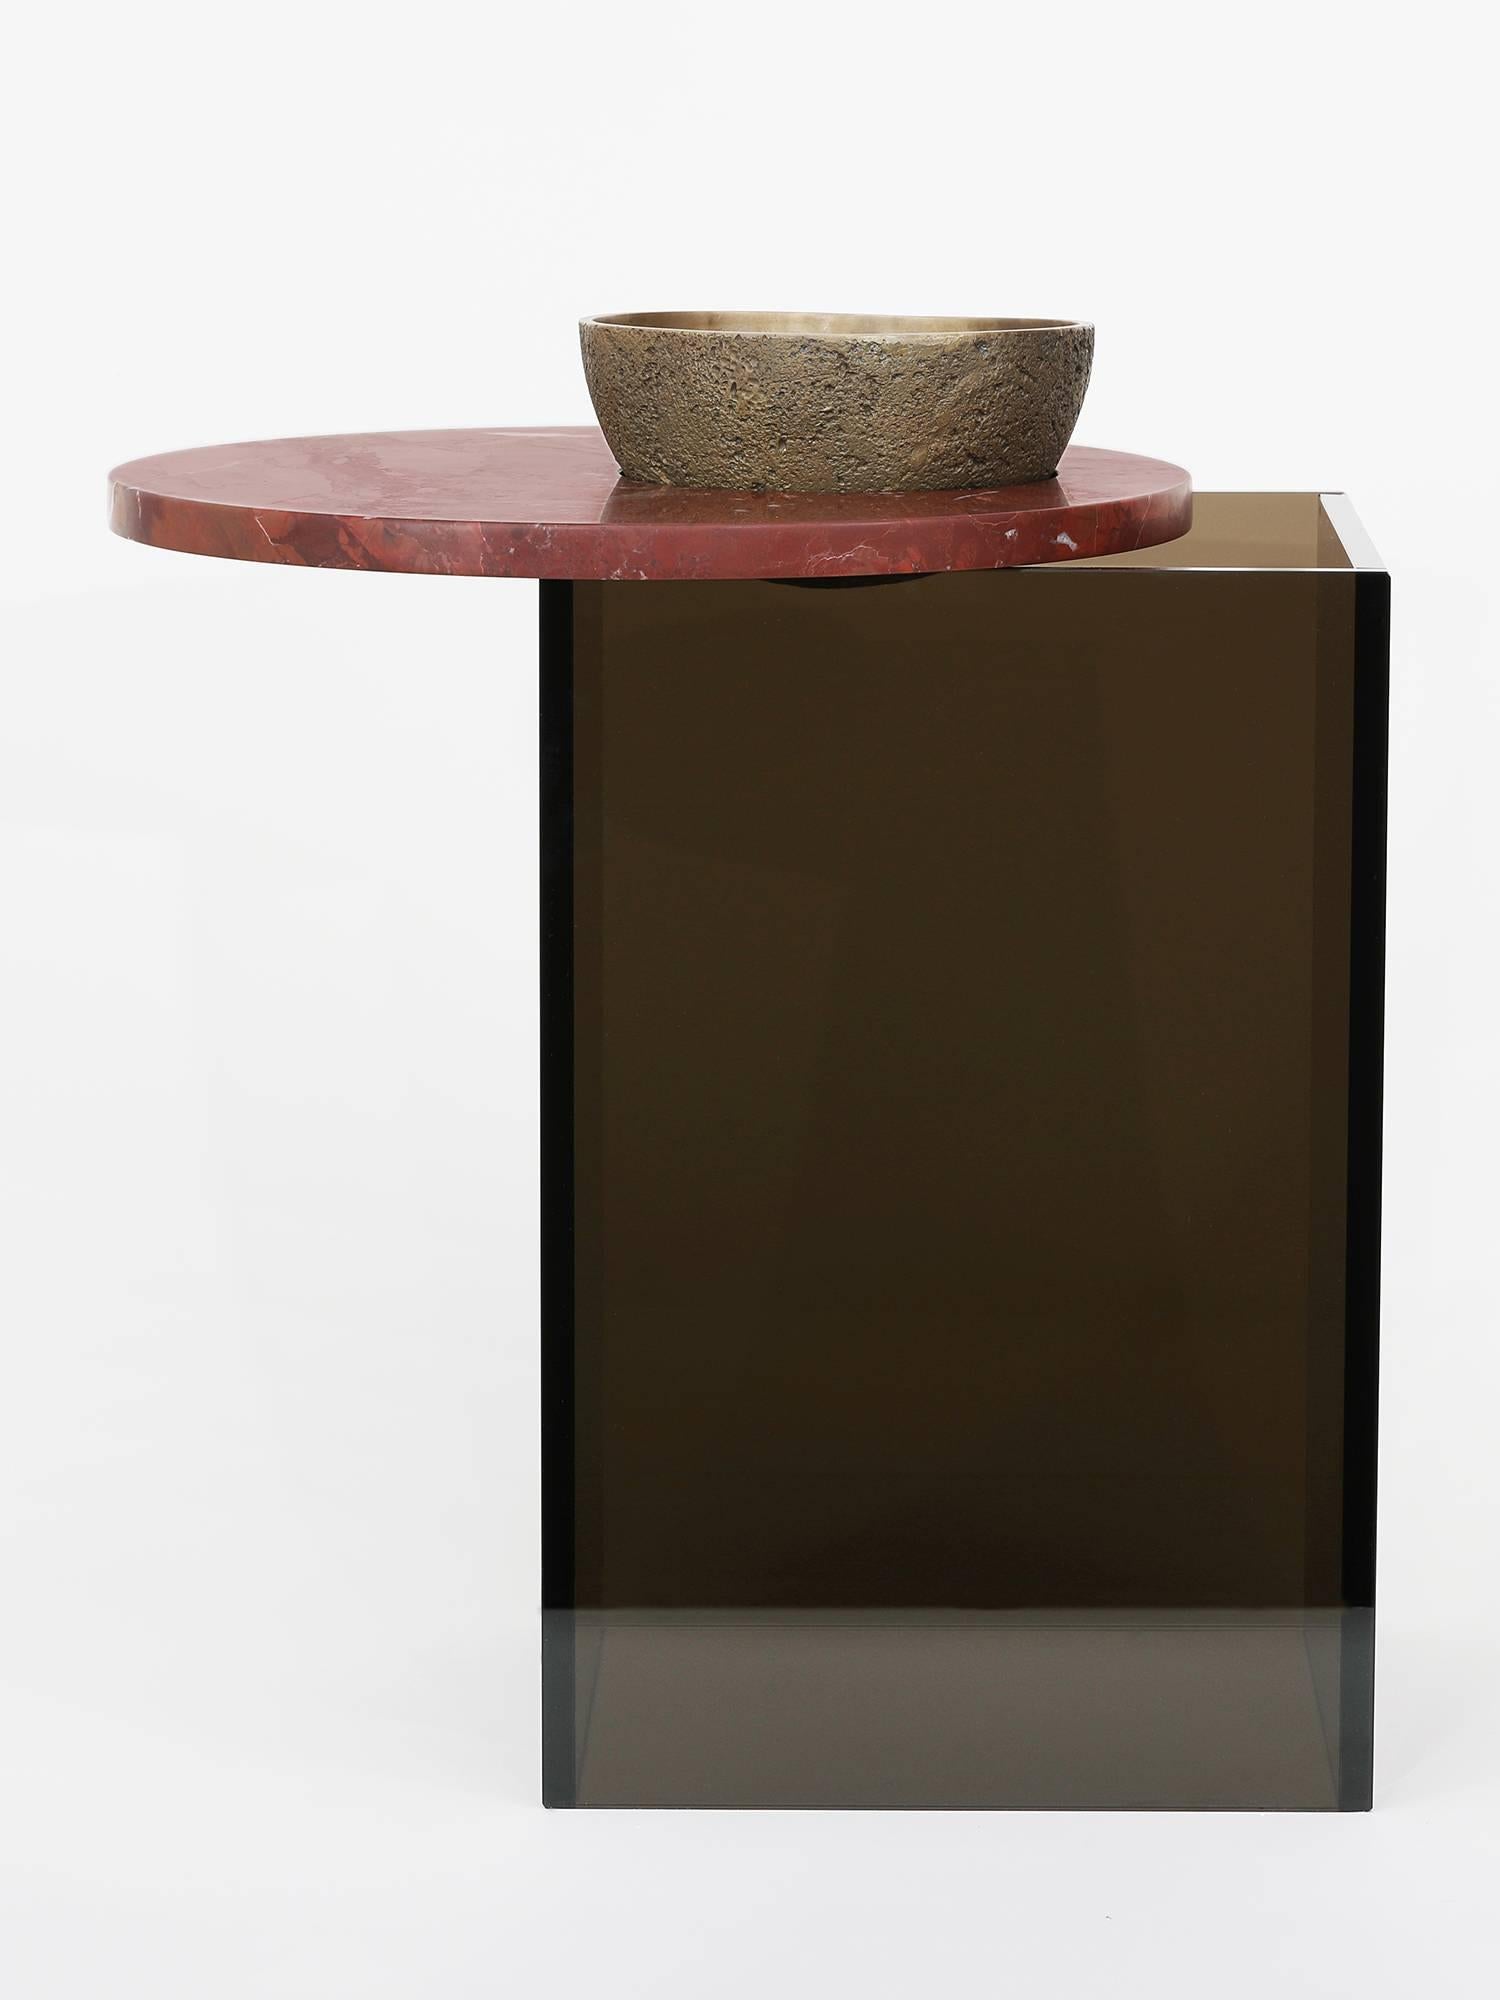 Eines von drei Gefäßen, die als MATERIAL-Maquetten für Brian Thoreens größere Werke entwickelt wurden. Bestehend aus einer Schale aus Bronzeguss, einer Platte aus rotem Marmor und einem Sockel aus Bronzeglas. Die Höhe eines kleinen Beistelltisches